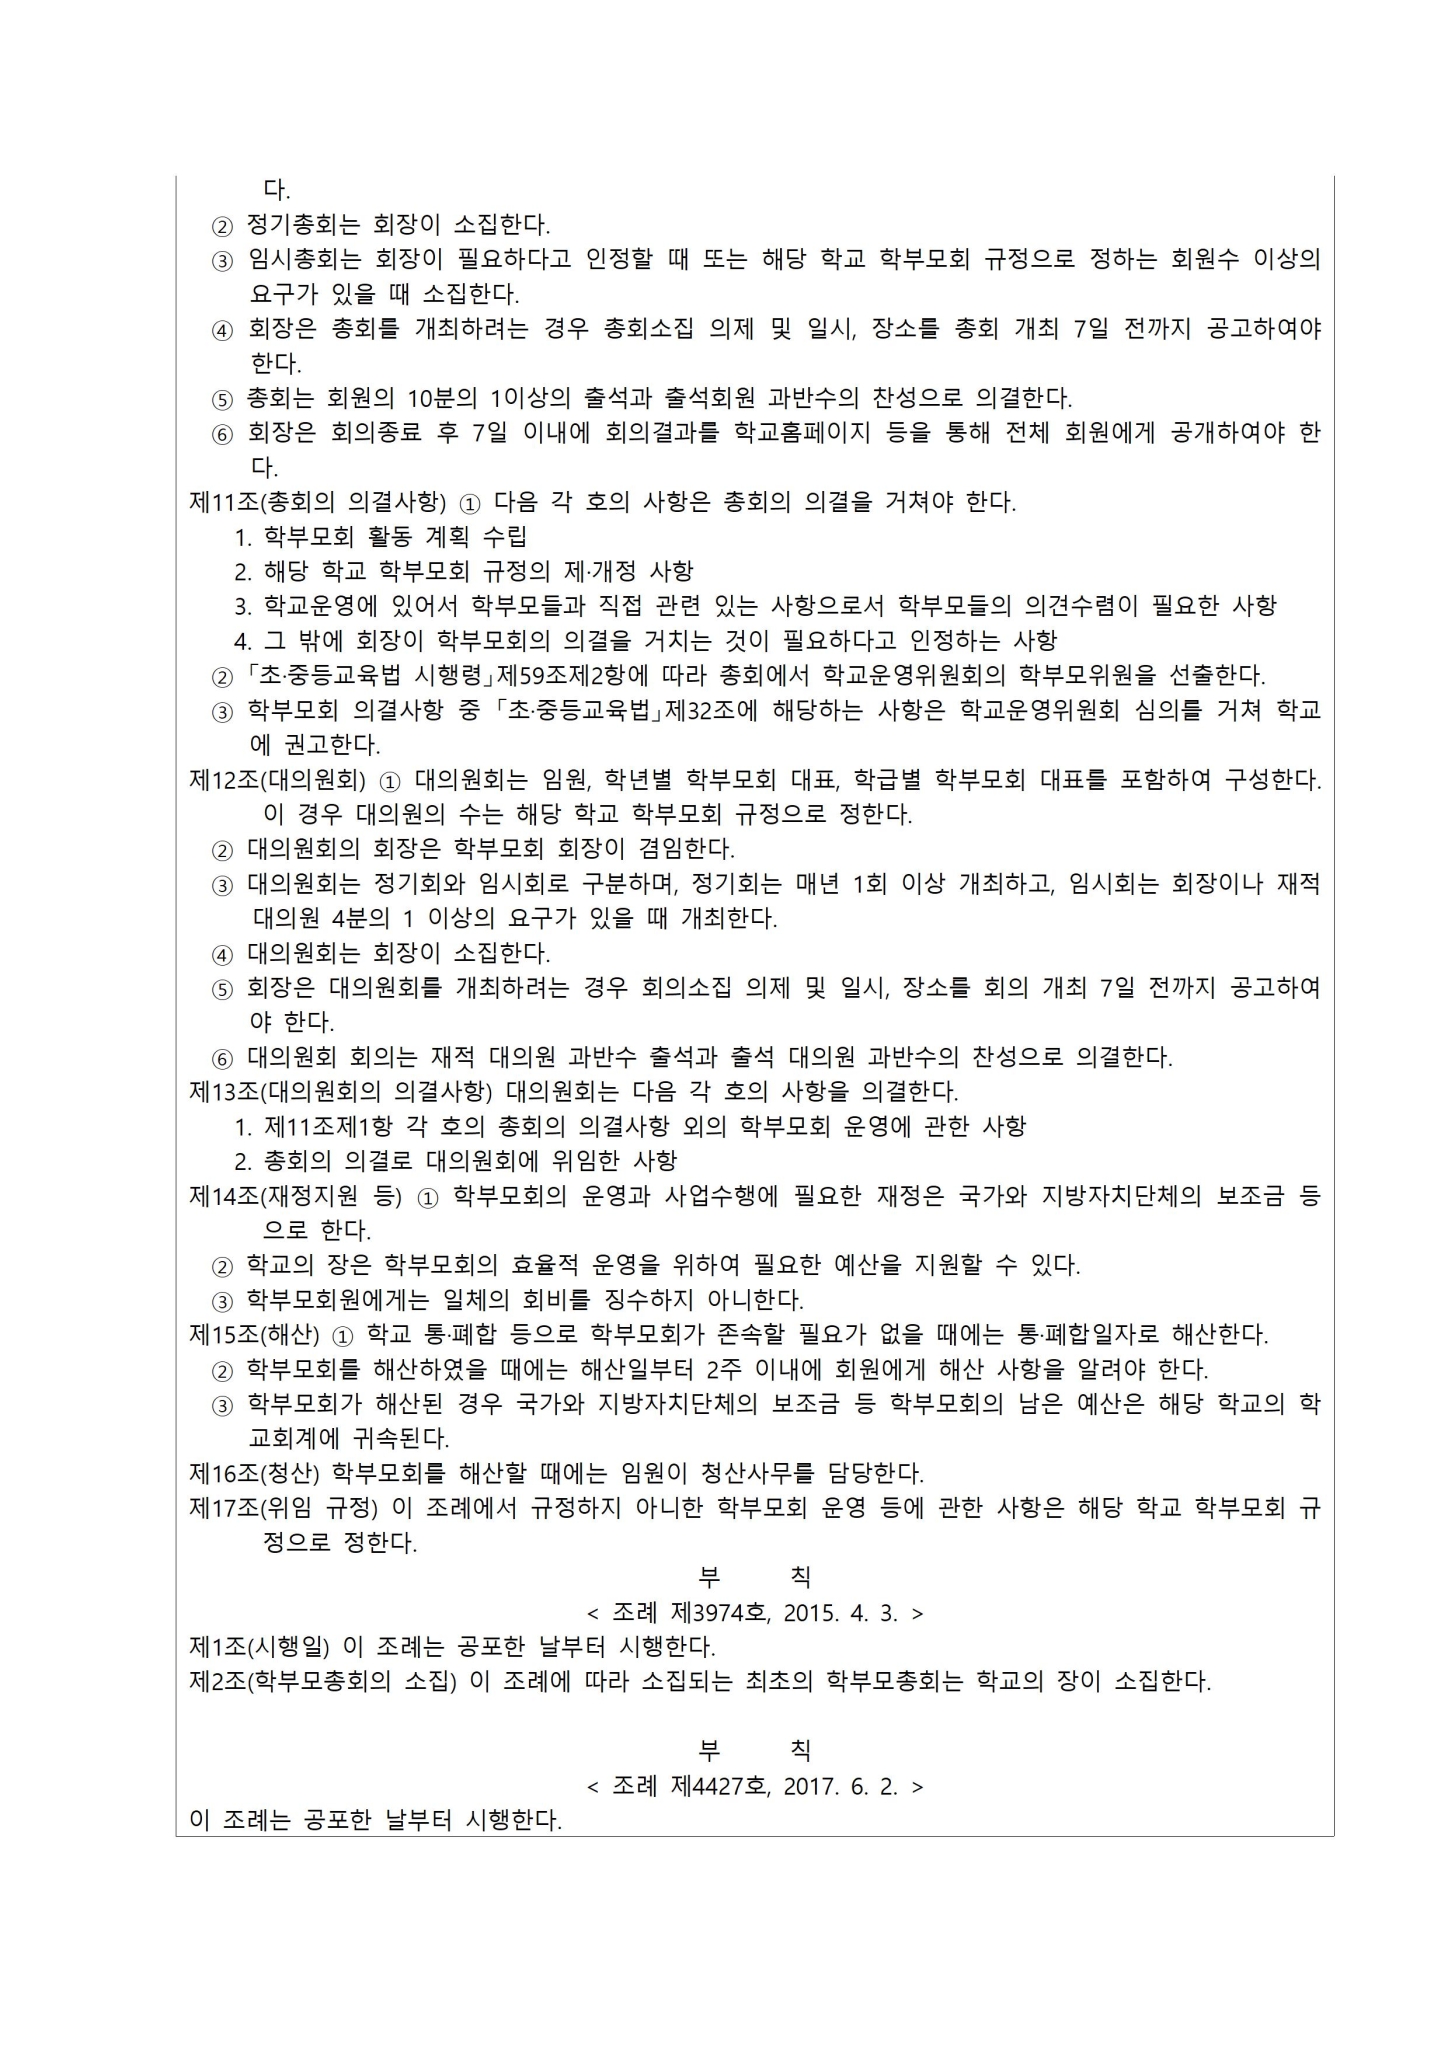 가정통신문 2022-14호 학부모회 선출관리 위원회 구성 및 학부모회 임원 선출 홍보004